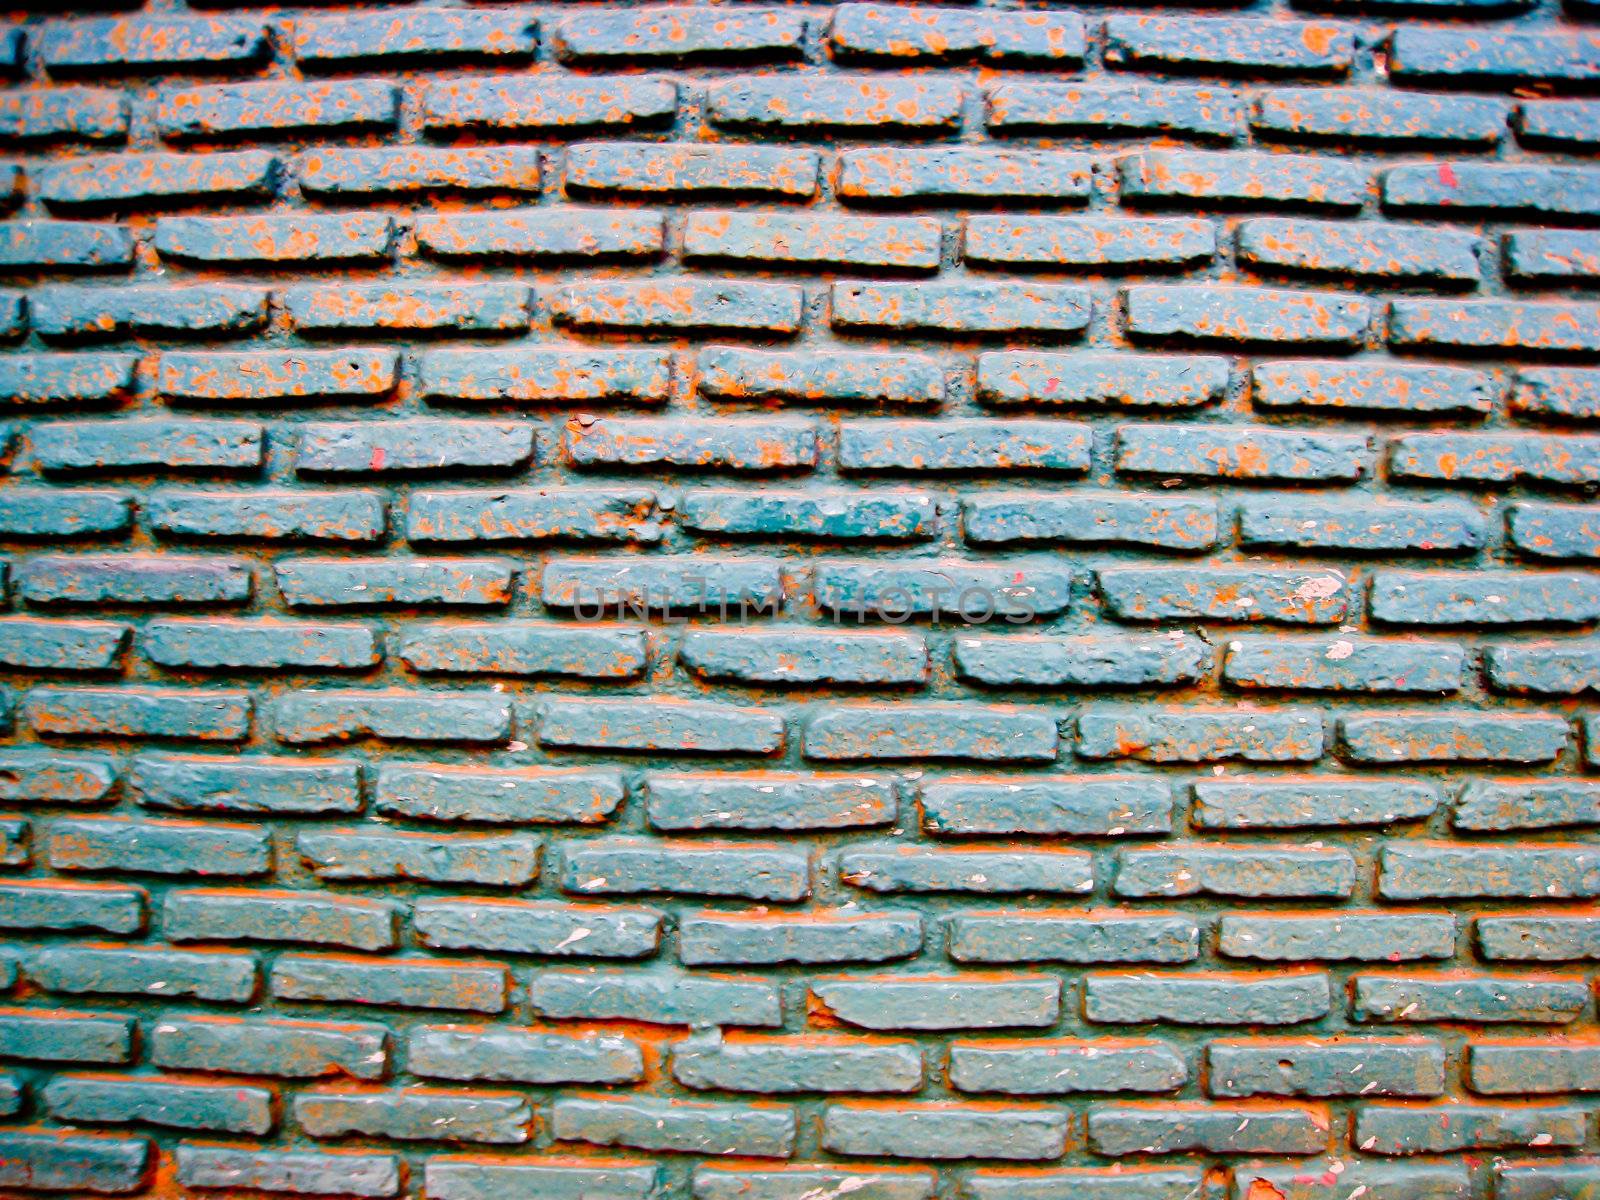 Blue brick pattern by gjeerawut